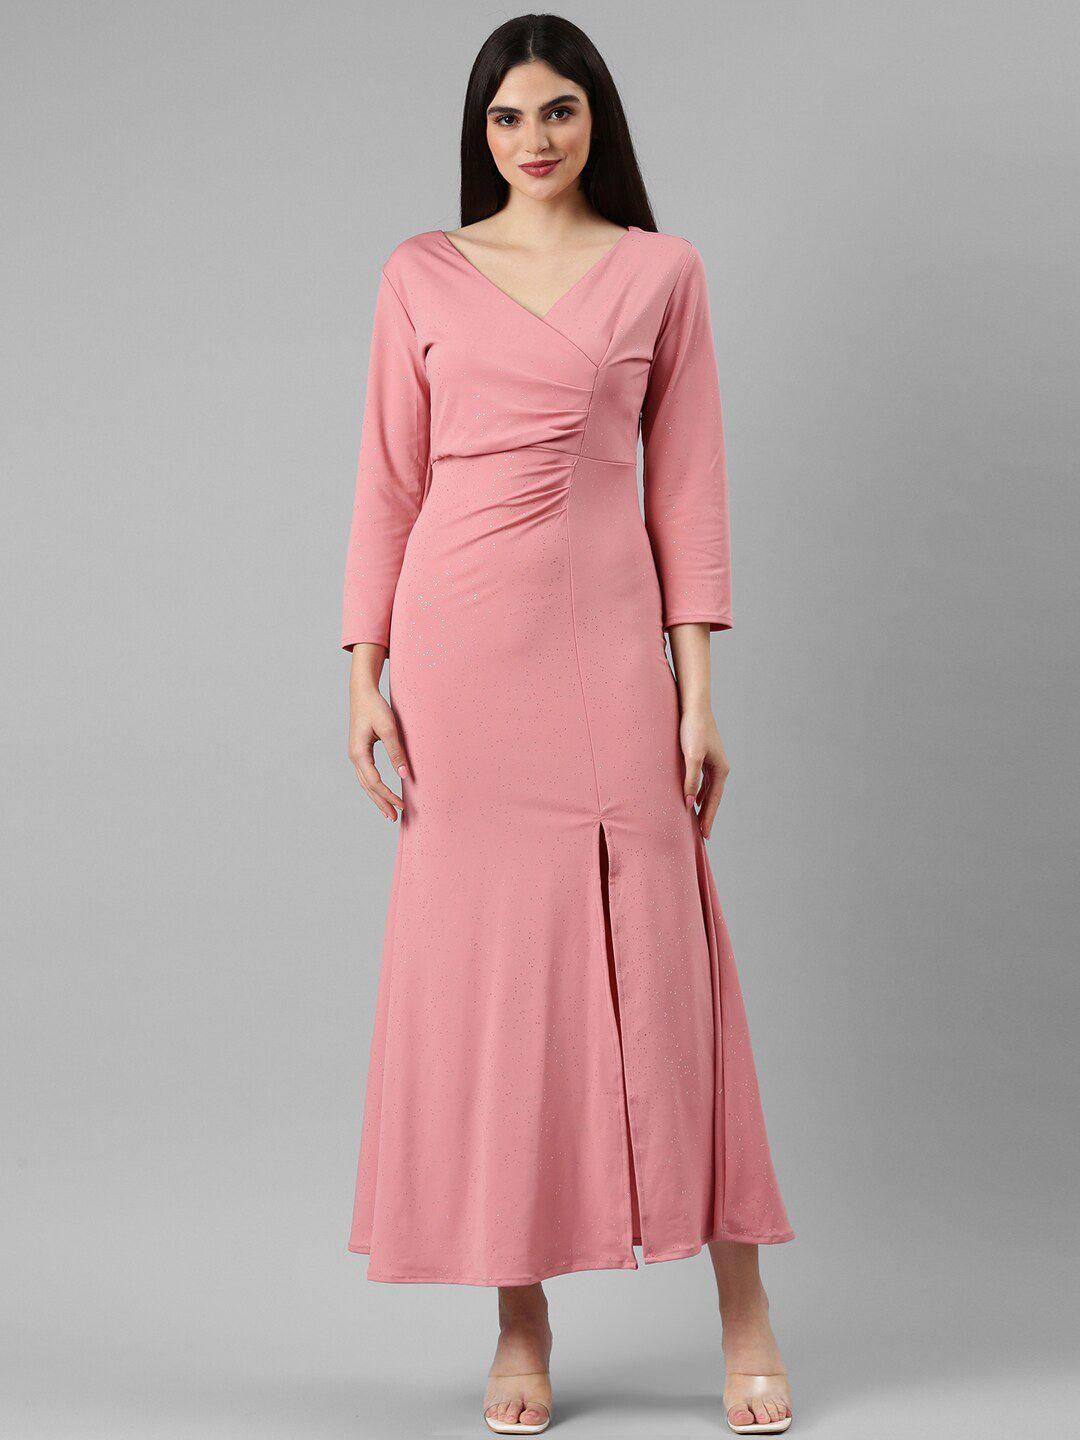 showoff peach-coloured sheath dress